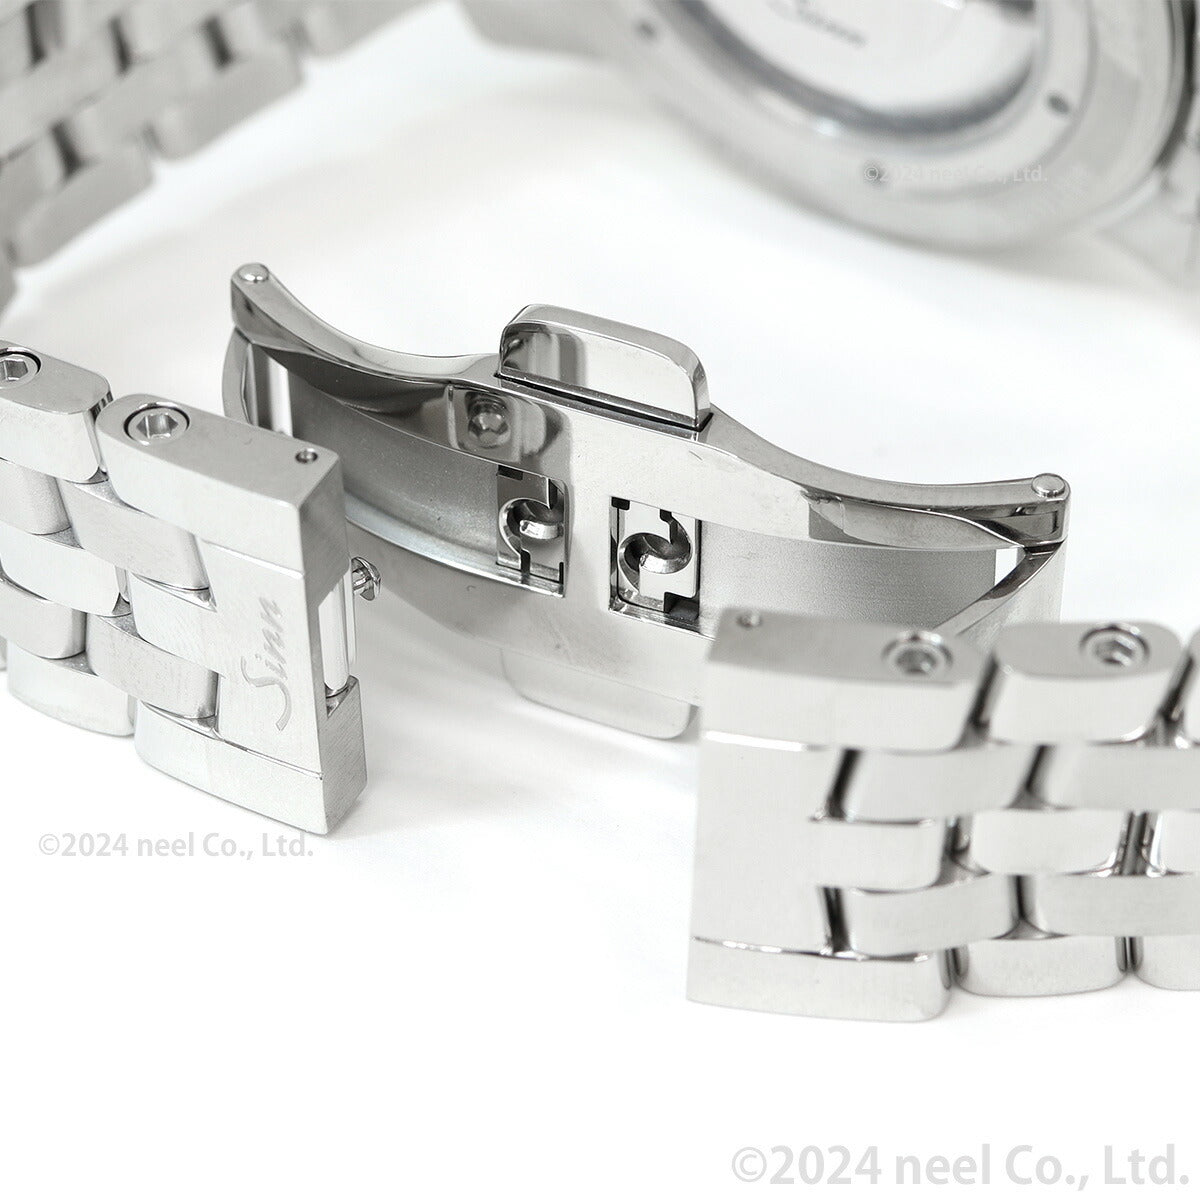 【60回分割手数料無料！】Sinn ジン 104.ST.SA.A 自動巻き 腕時計 メンズ Instrument Watches インストゥルメント ウォッチ 5連 ステンレスバンド ドイツ製